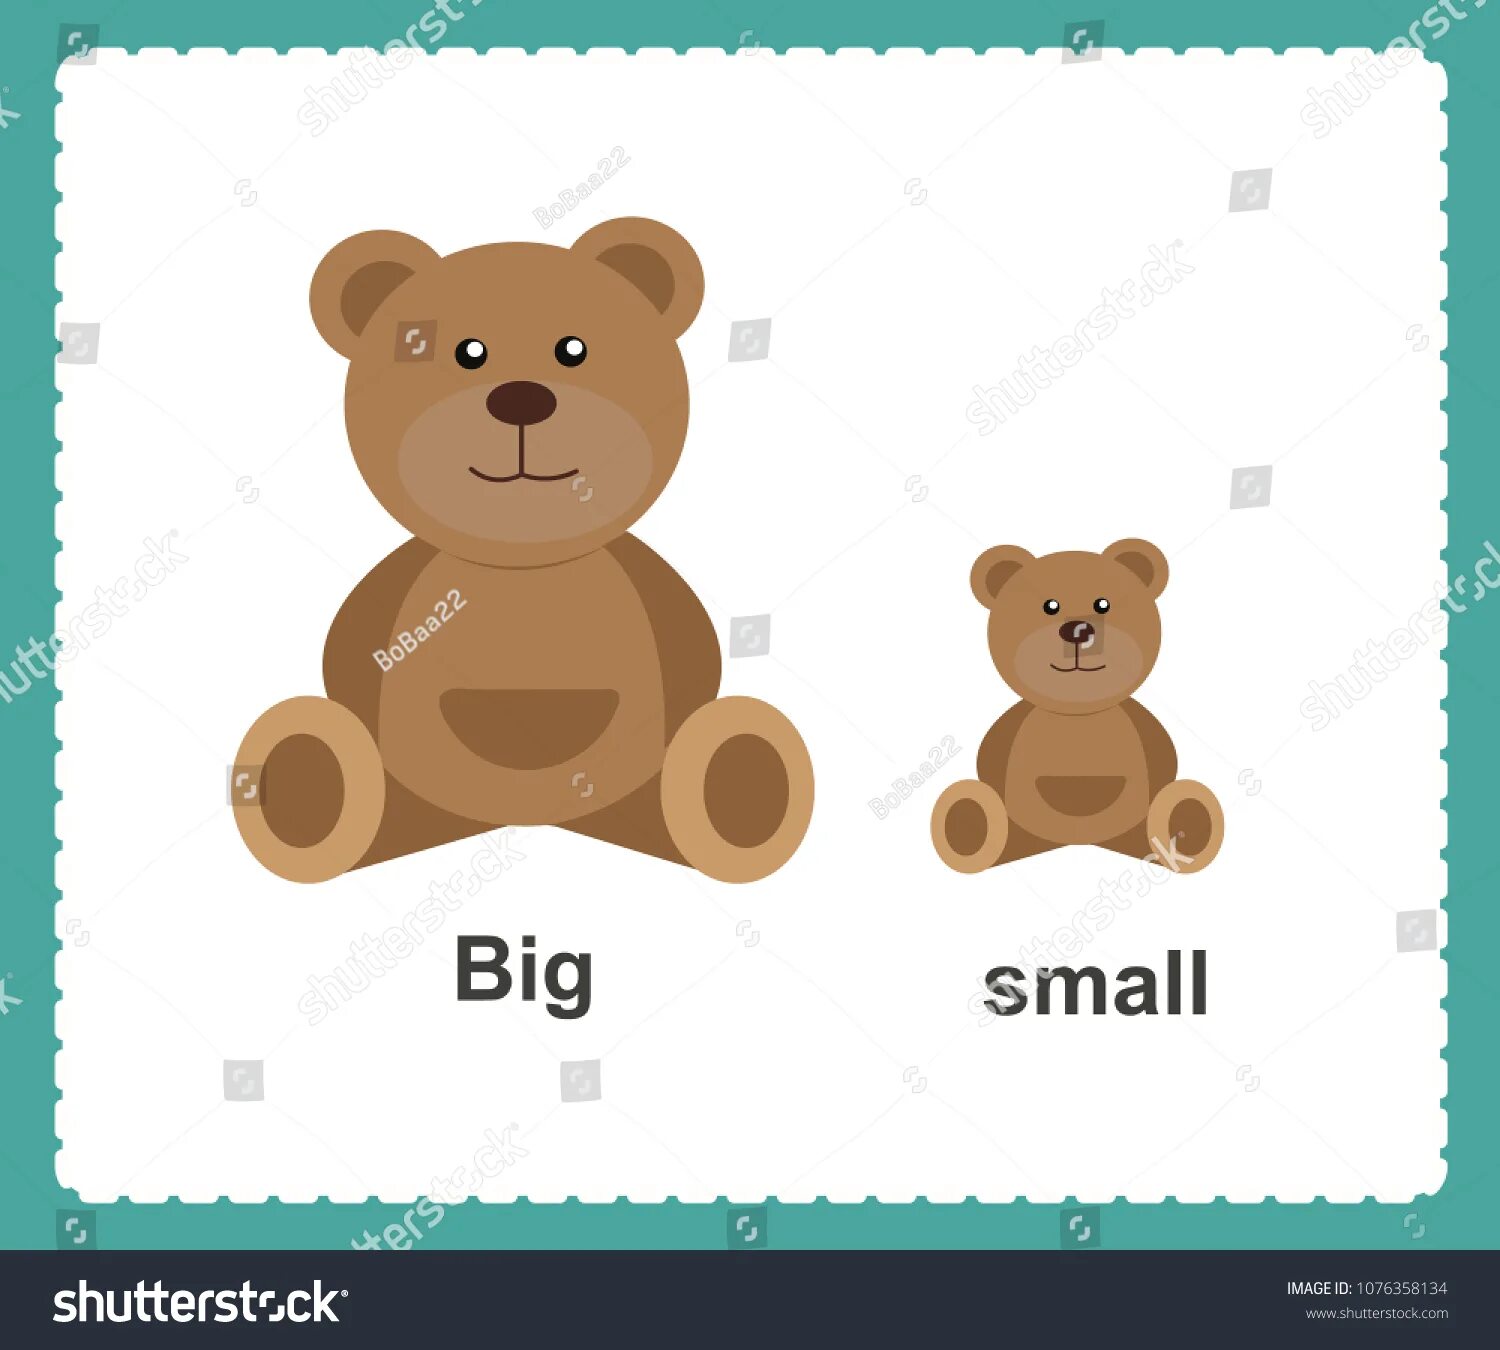 Small big com. Карточки на английском большой маленький. Big small. Большой маленький на английском. Большой и маленький на английском для детей.